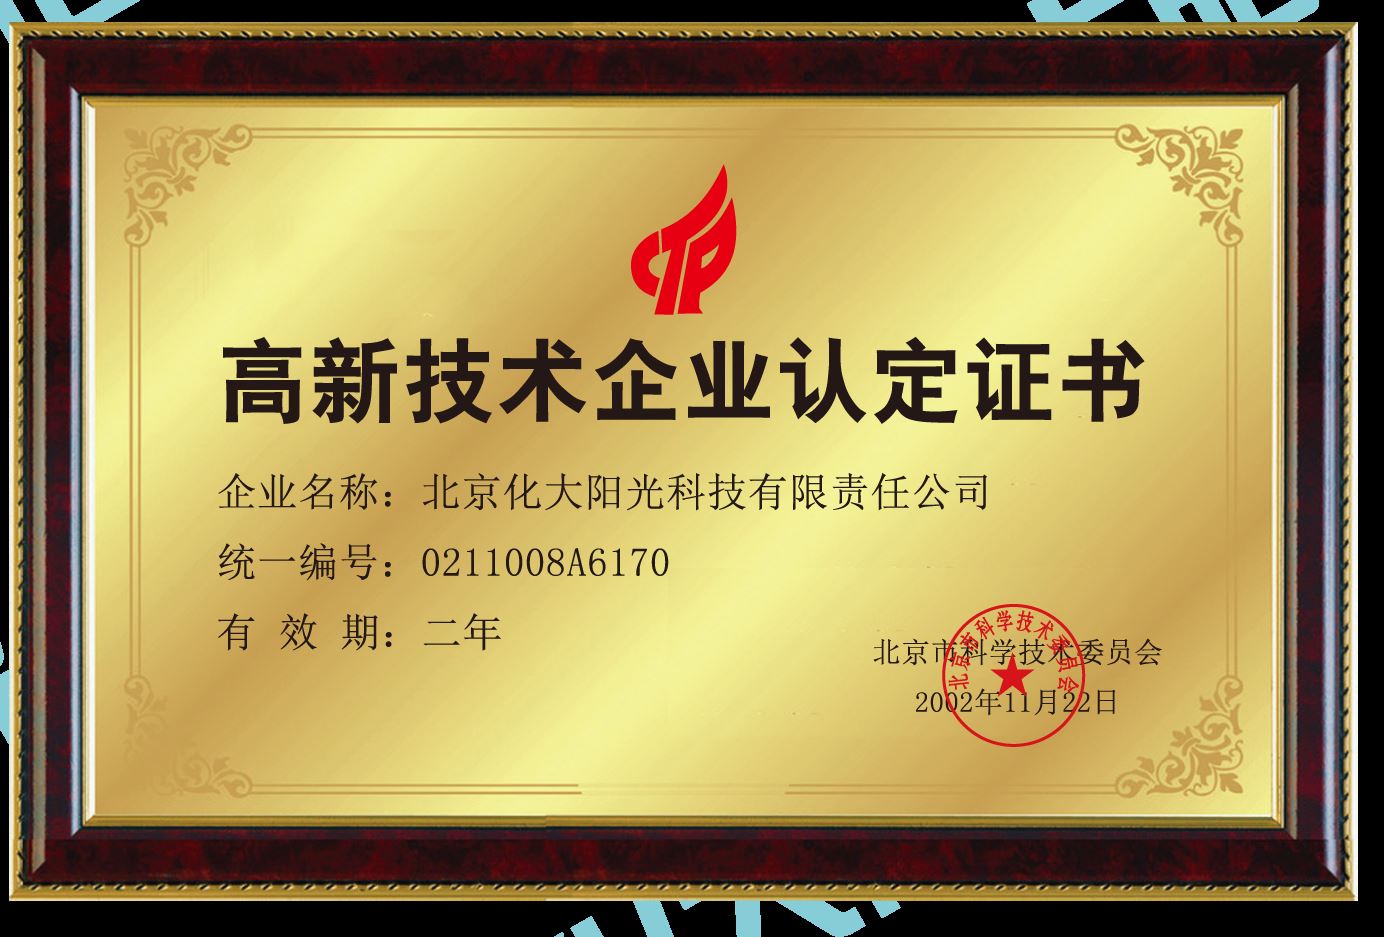 北京市高新技术企业认证